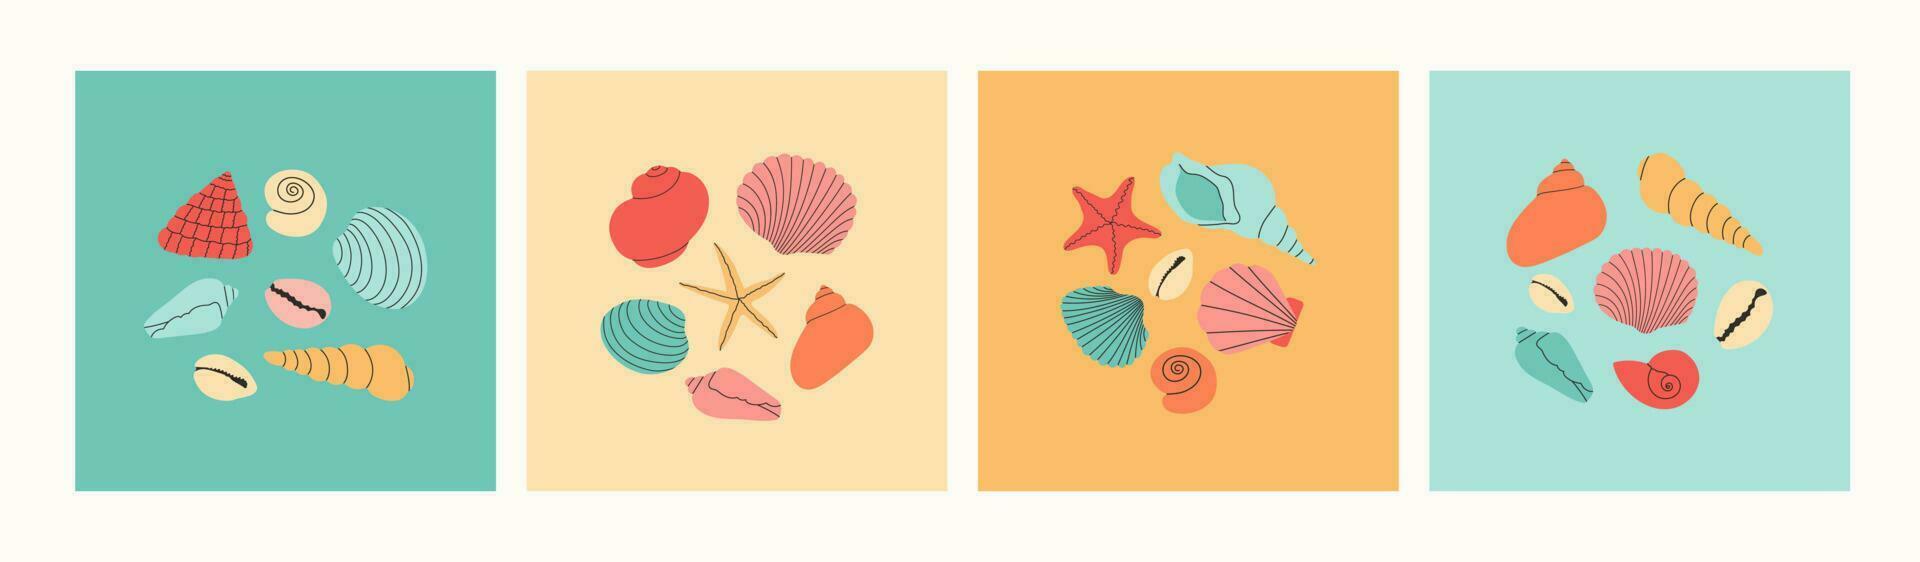 conjunto de varios vistoso conchas marinas y estrellas de mar mano dibujado moderno creativo concepto. verano vacaciones recopilación, tropical playa conchas vector modelo para bandera, saludo tarjeta, póster.